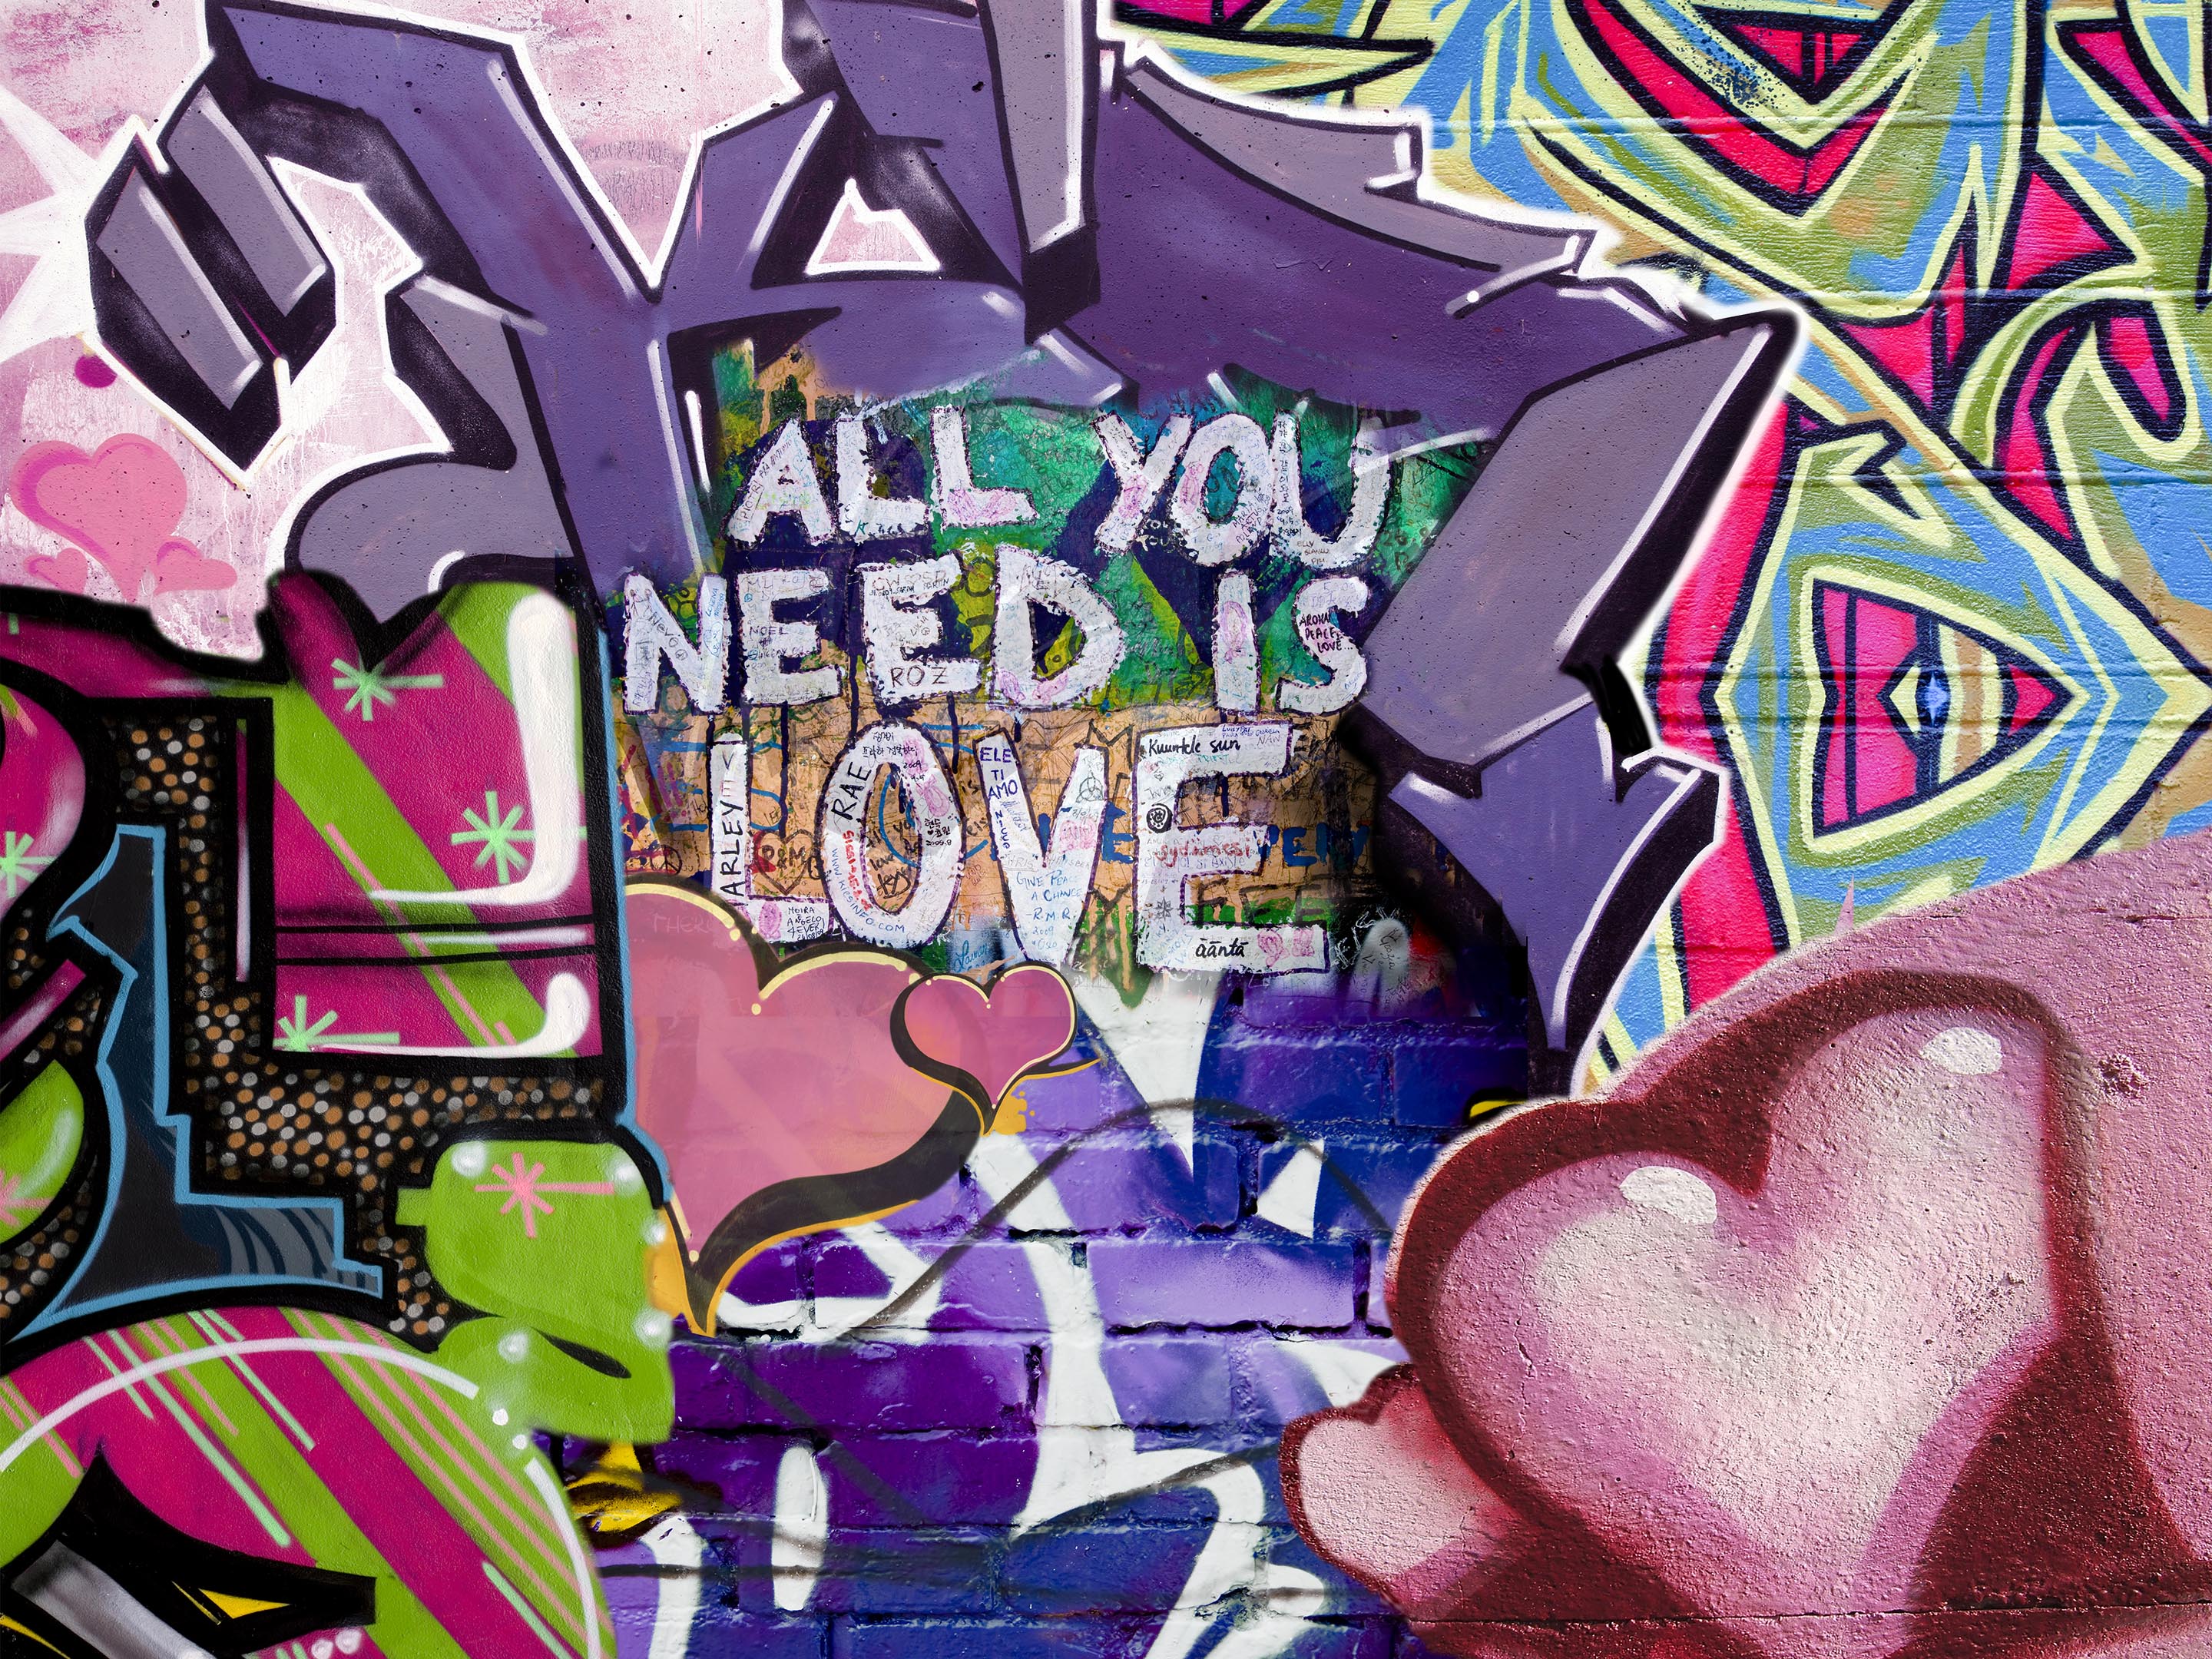 Graffiti - All I need is love